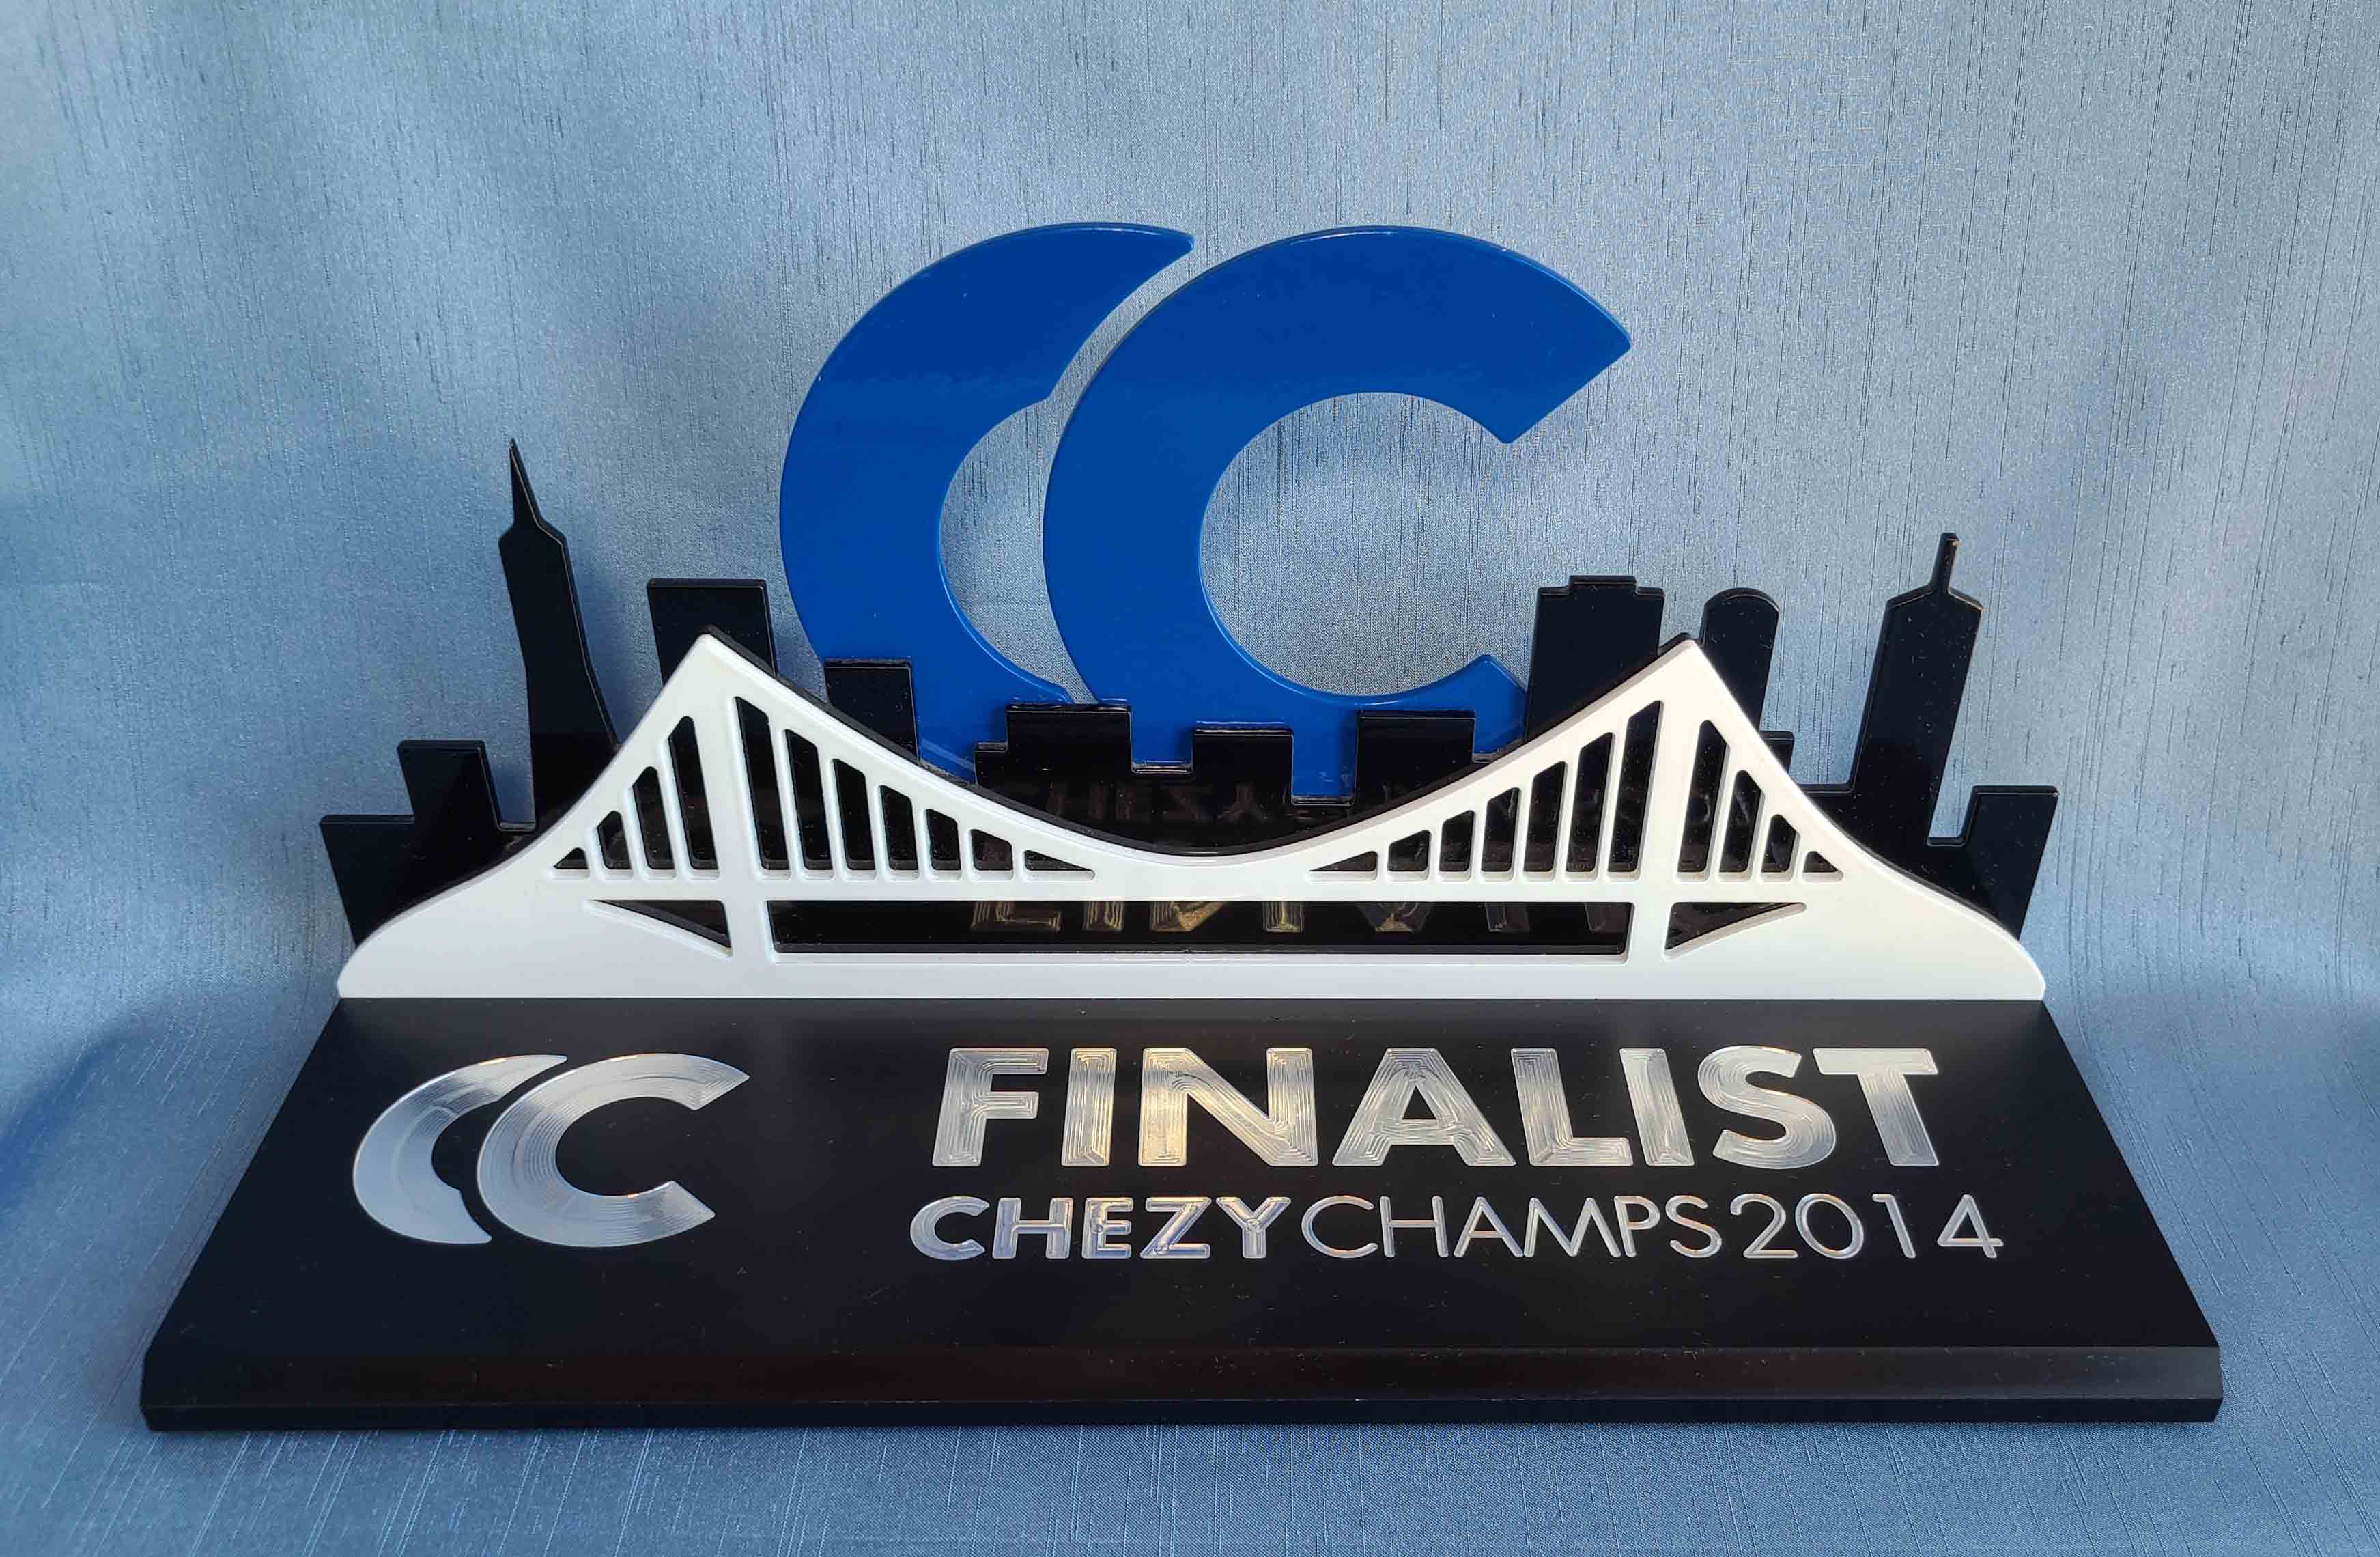 2014_Chezy_Champs_Finalist